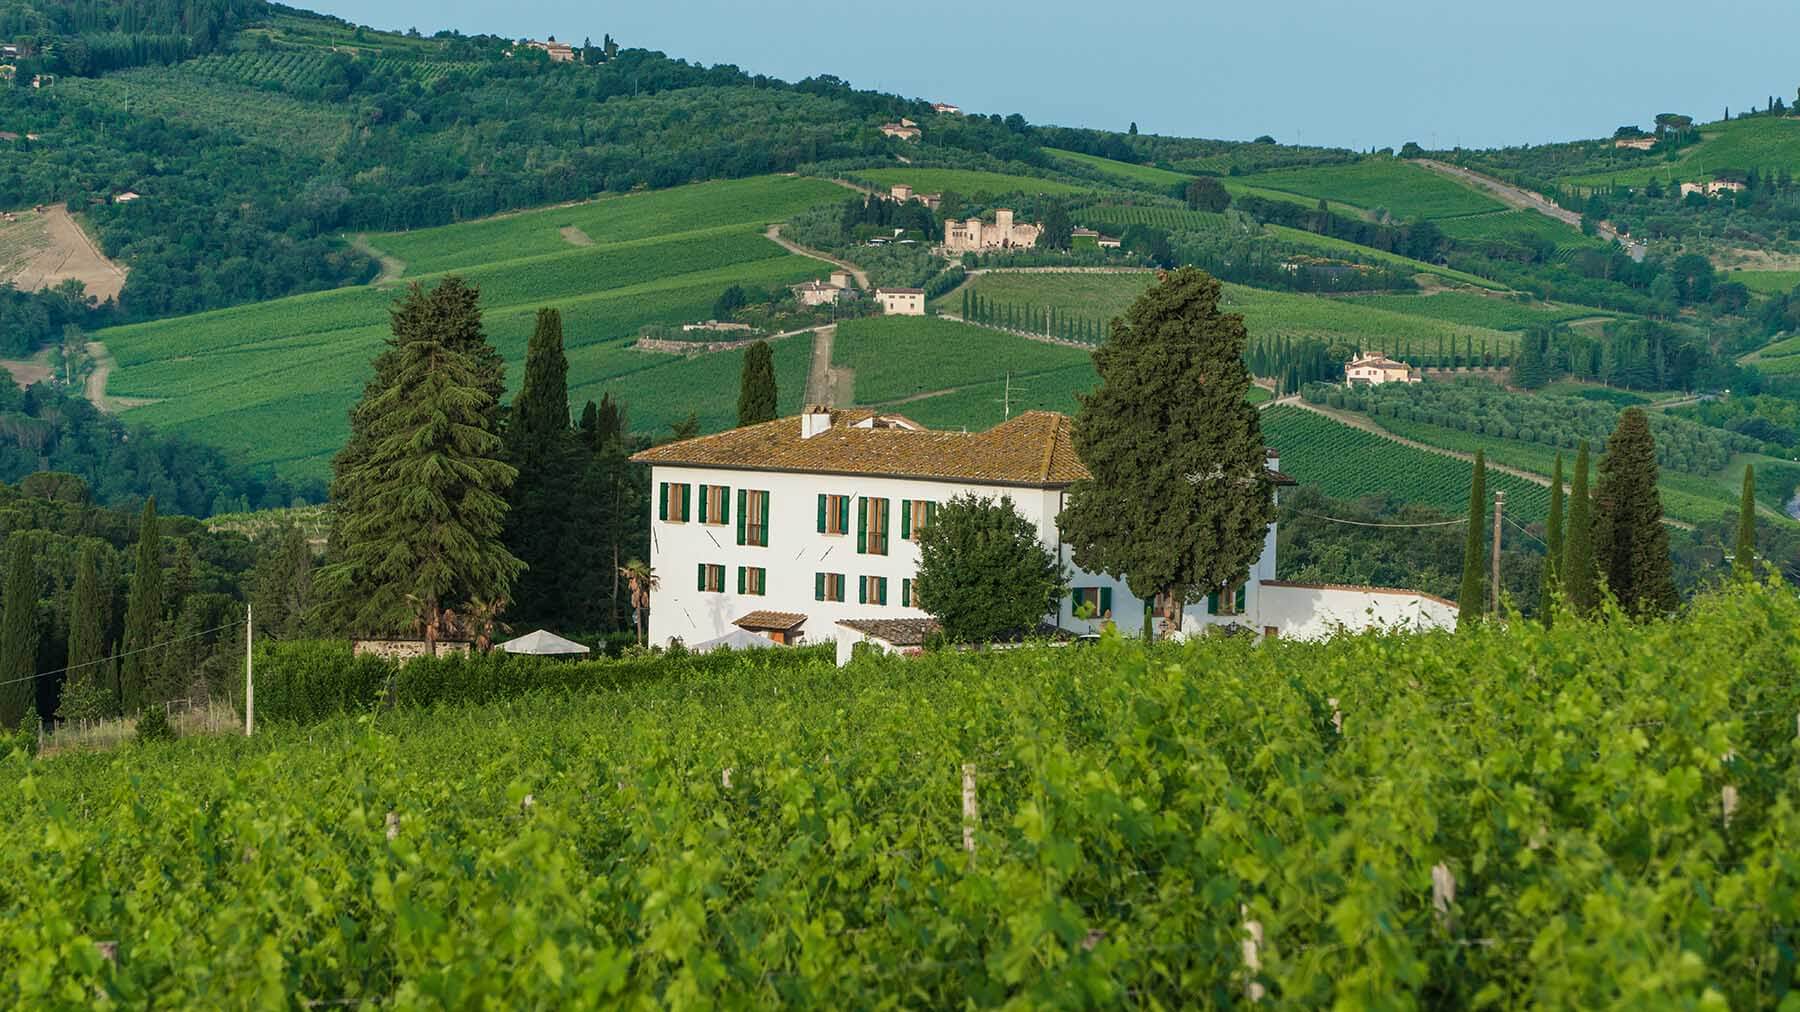 Triacca winery: La Madonnina estate